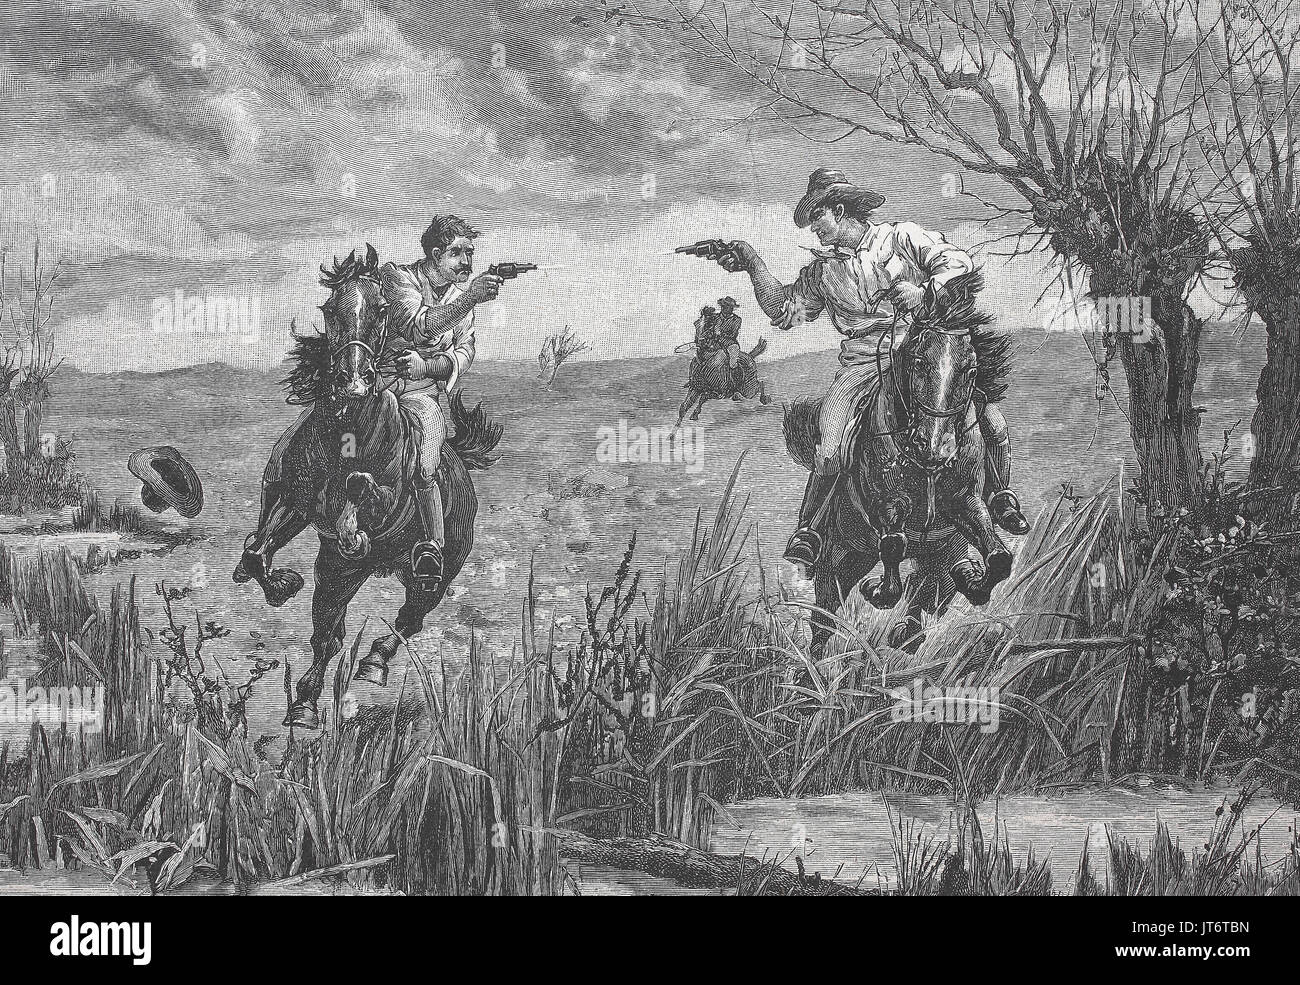 Cowboys américains avec des pistolets de duel le cheval, l'amélioration numérique reproduction d'une image publié entre 1880 - 1885 Banque D'Images